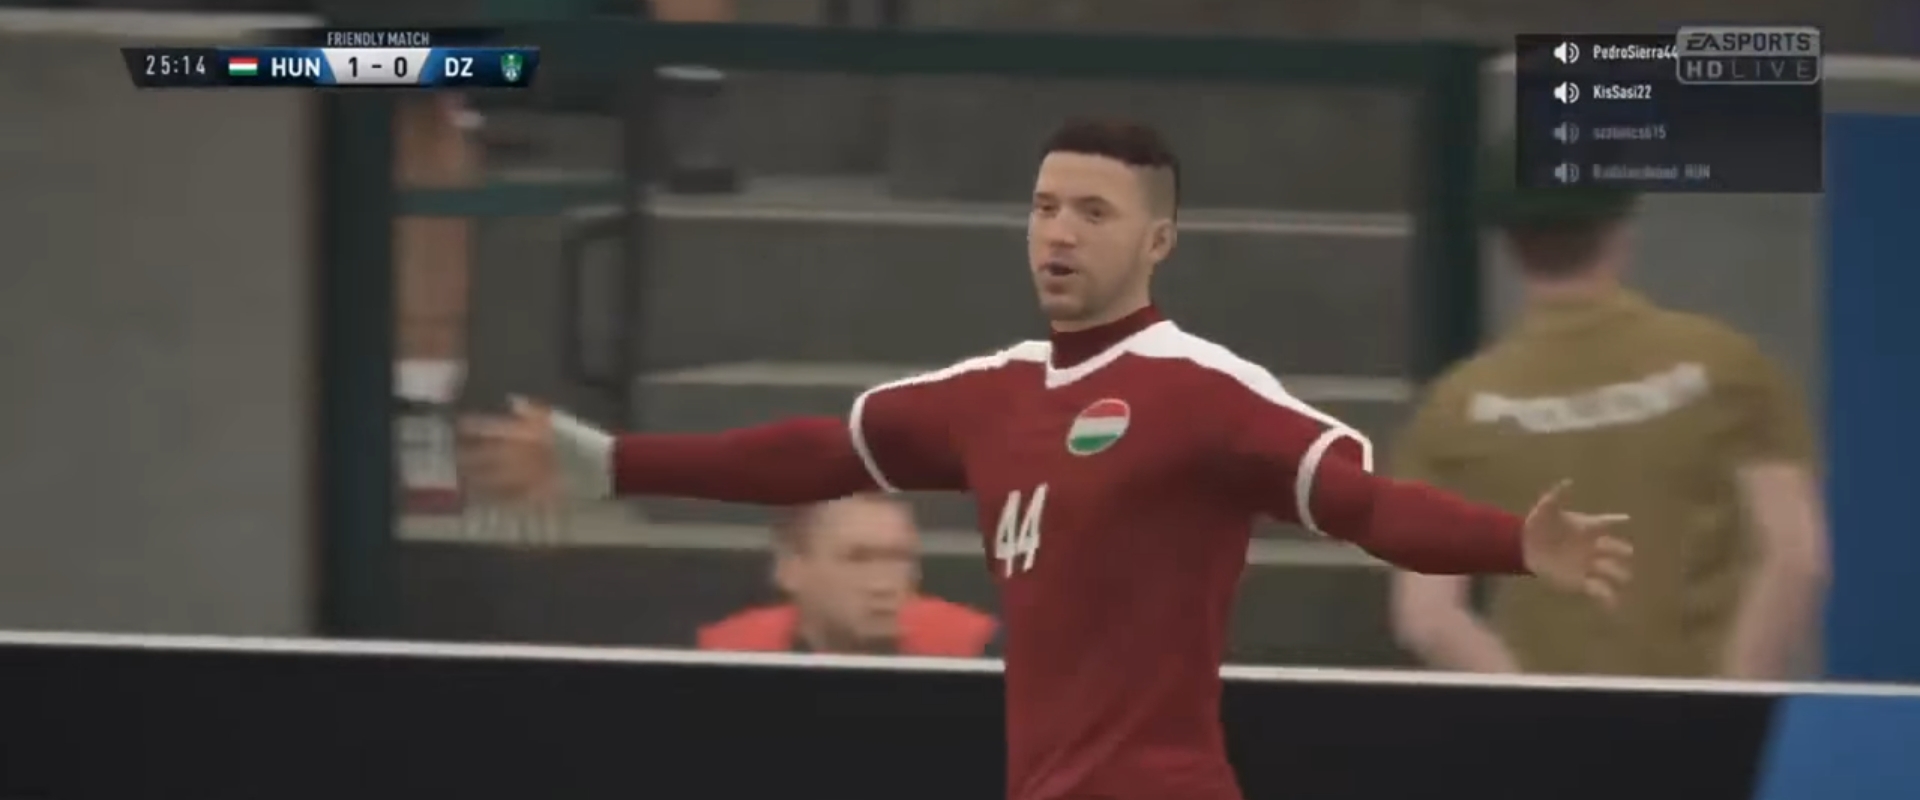 Egyetlen pontot ért csak a magyar FIFA-válogatott 4 gólja - Videó